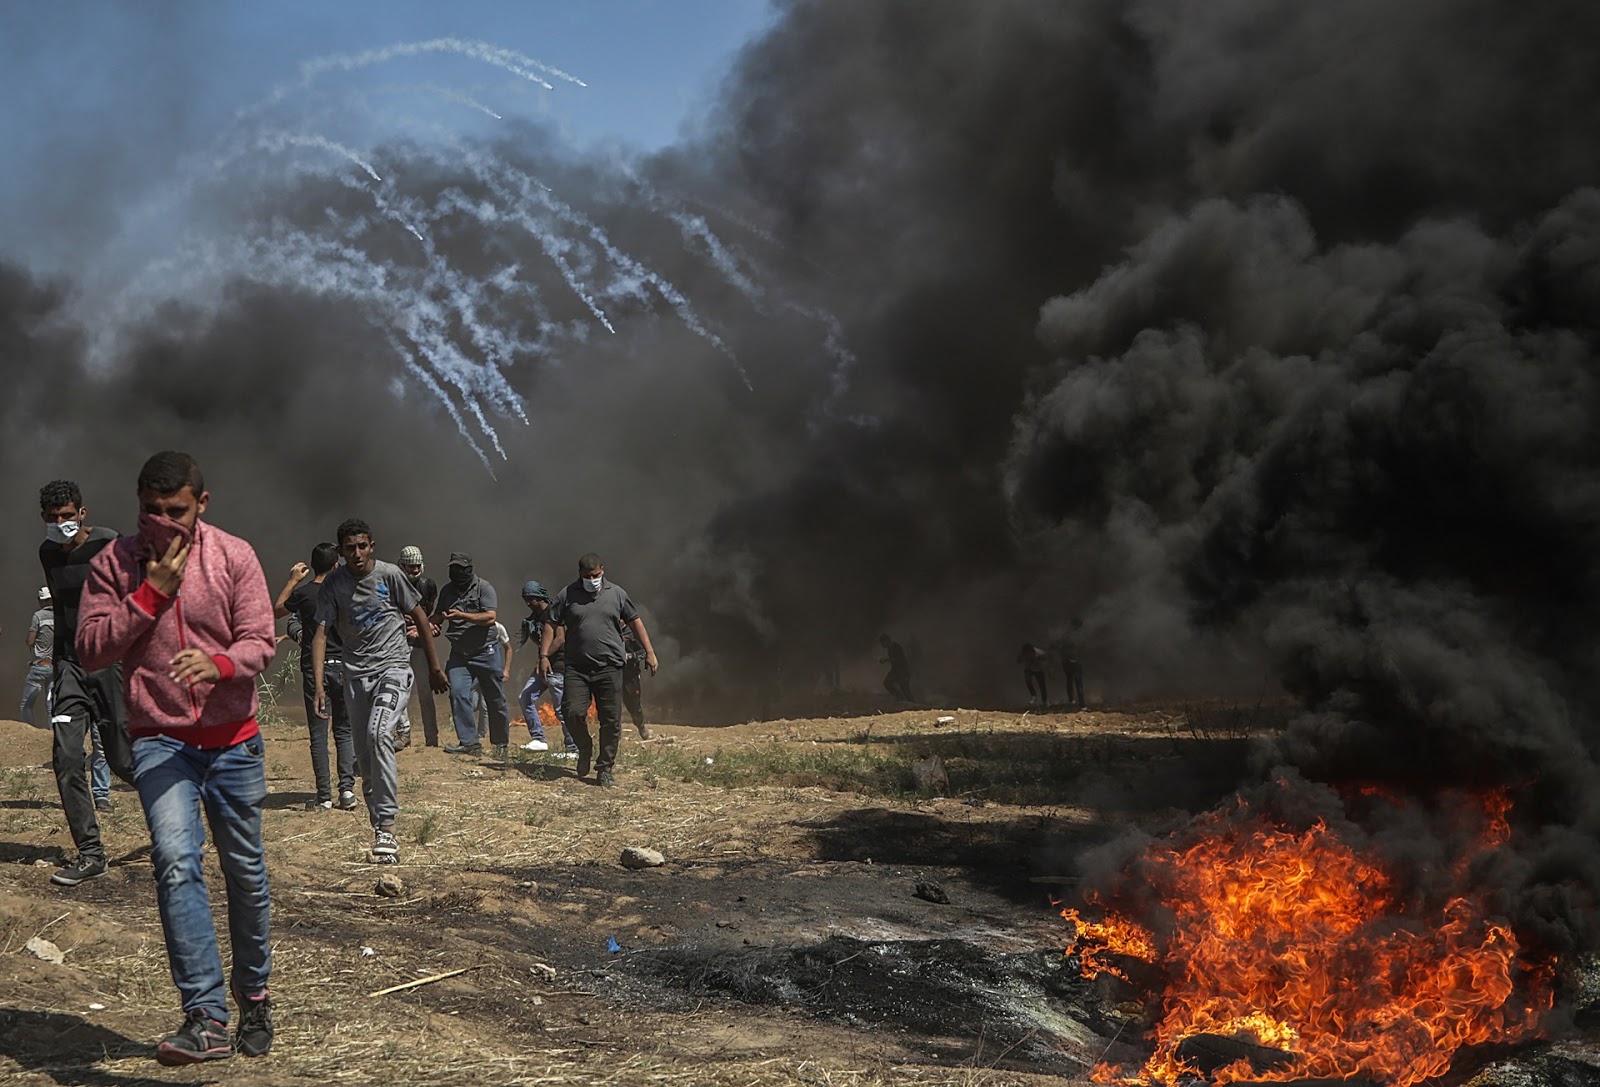 Παγκόσμια κατακραυγή για το μακελειό στη Γάζα - Διπλωματικές αντιδράσεις - Έκτακτη συνεδρίαση του συμβουλίου του ΟΗΕ - Φωτογραφία 1